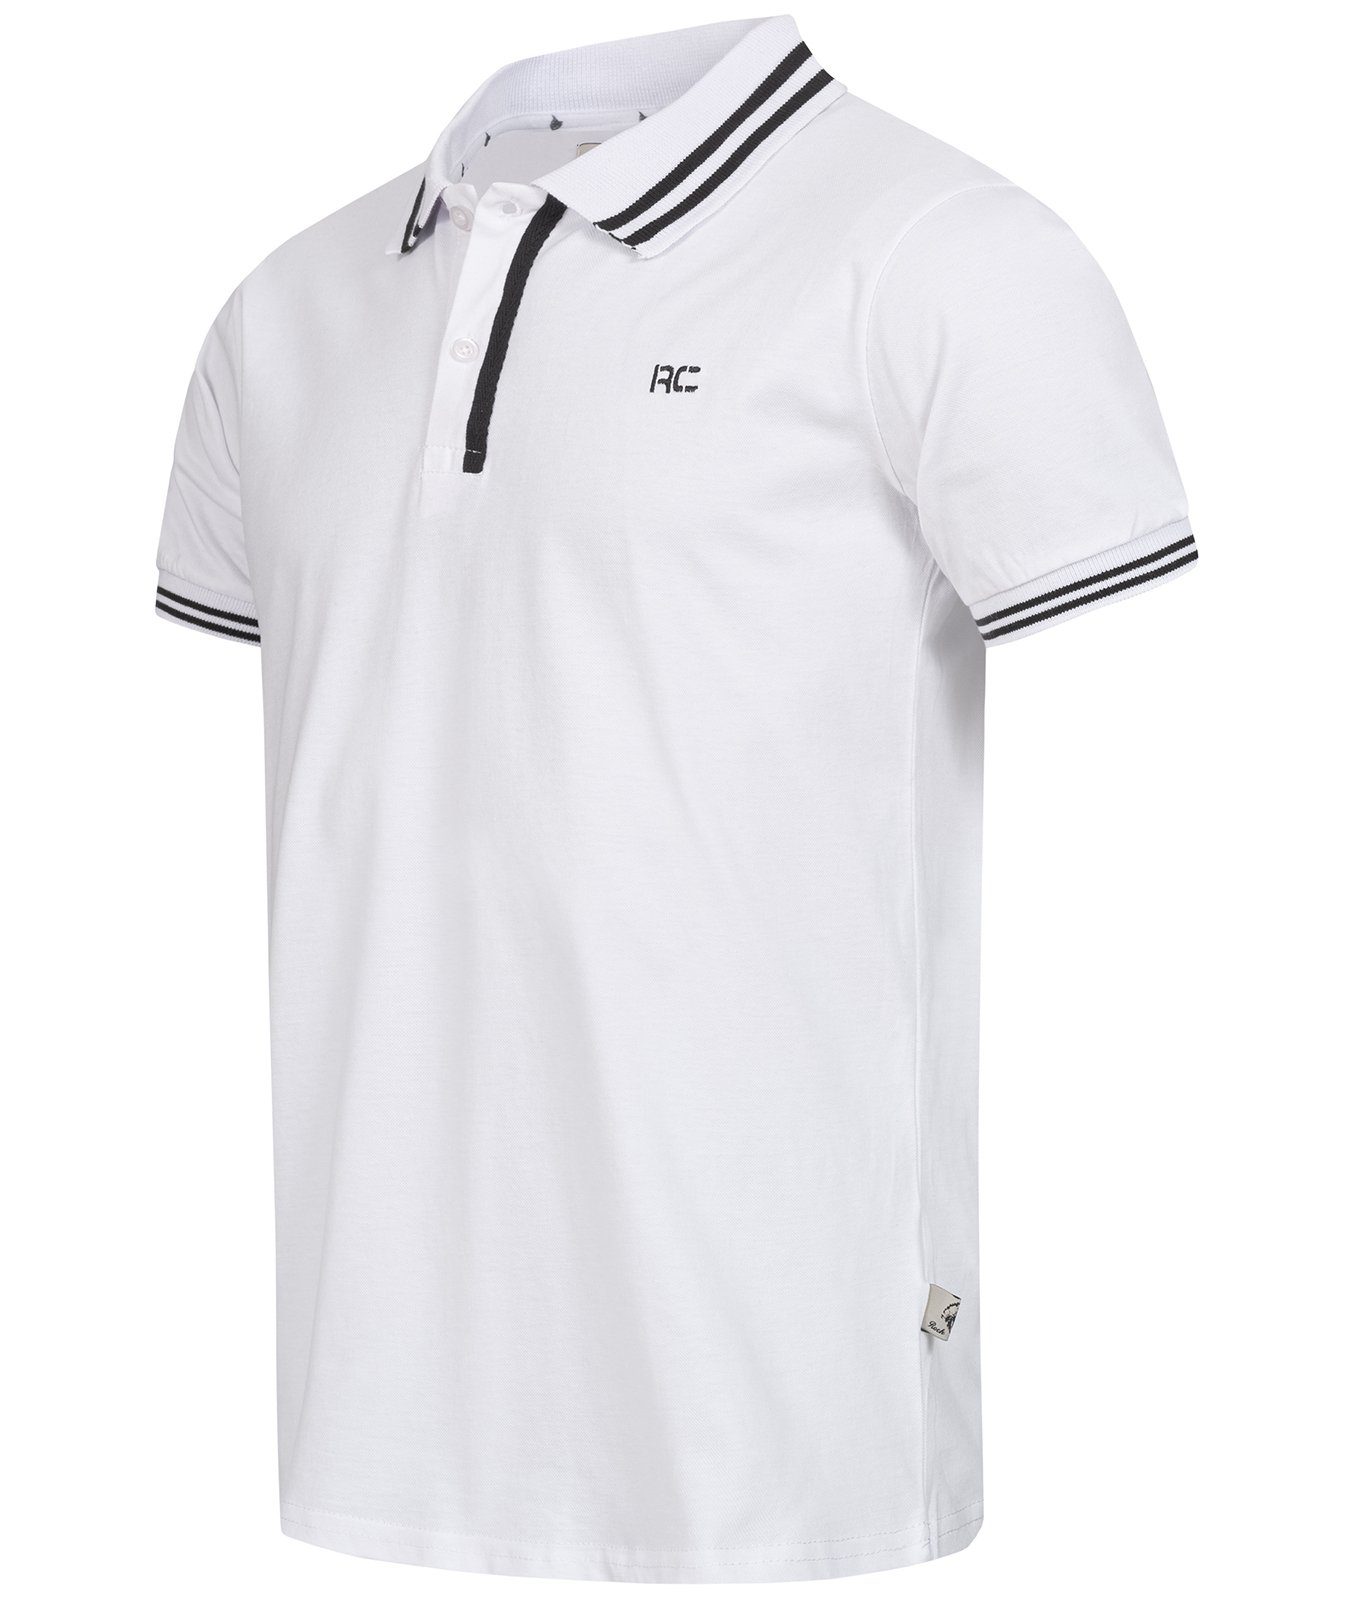 Rock Creek Poloshirt Herren H-283 Weiß-Schwarz mit Polokragen T-Shirt